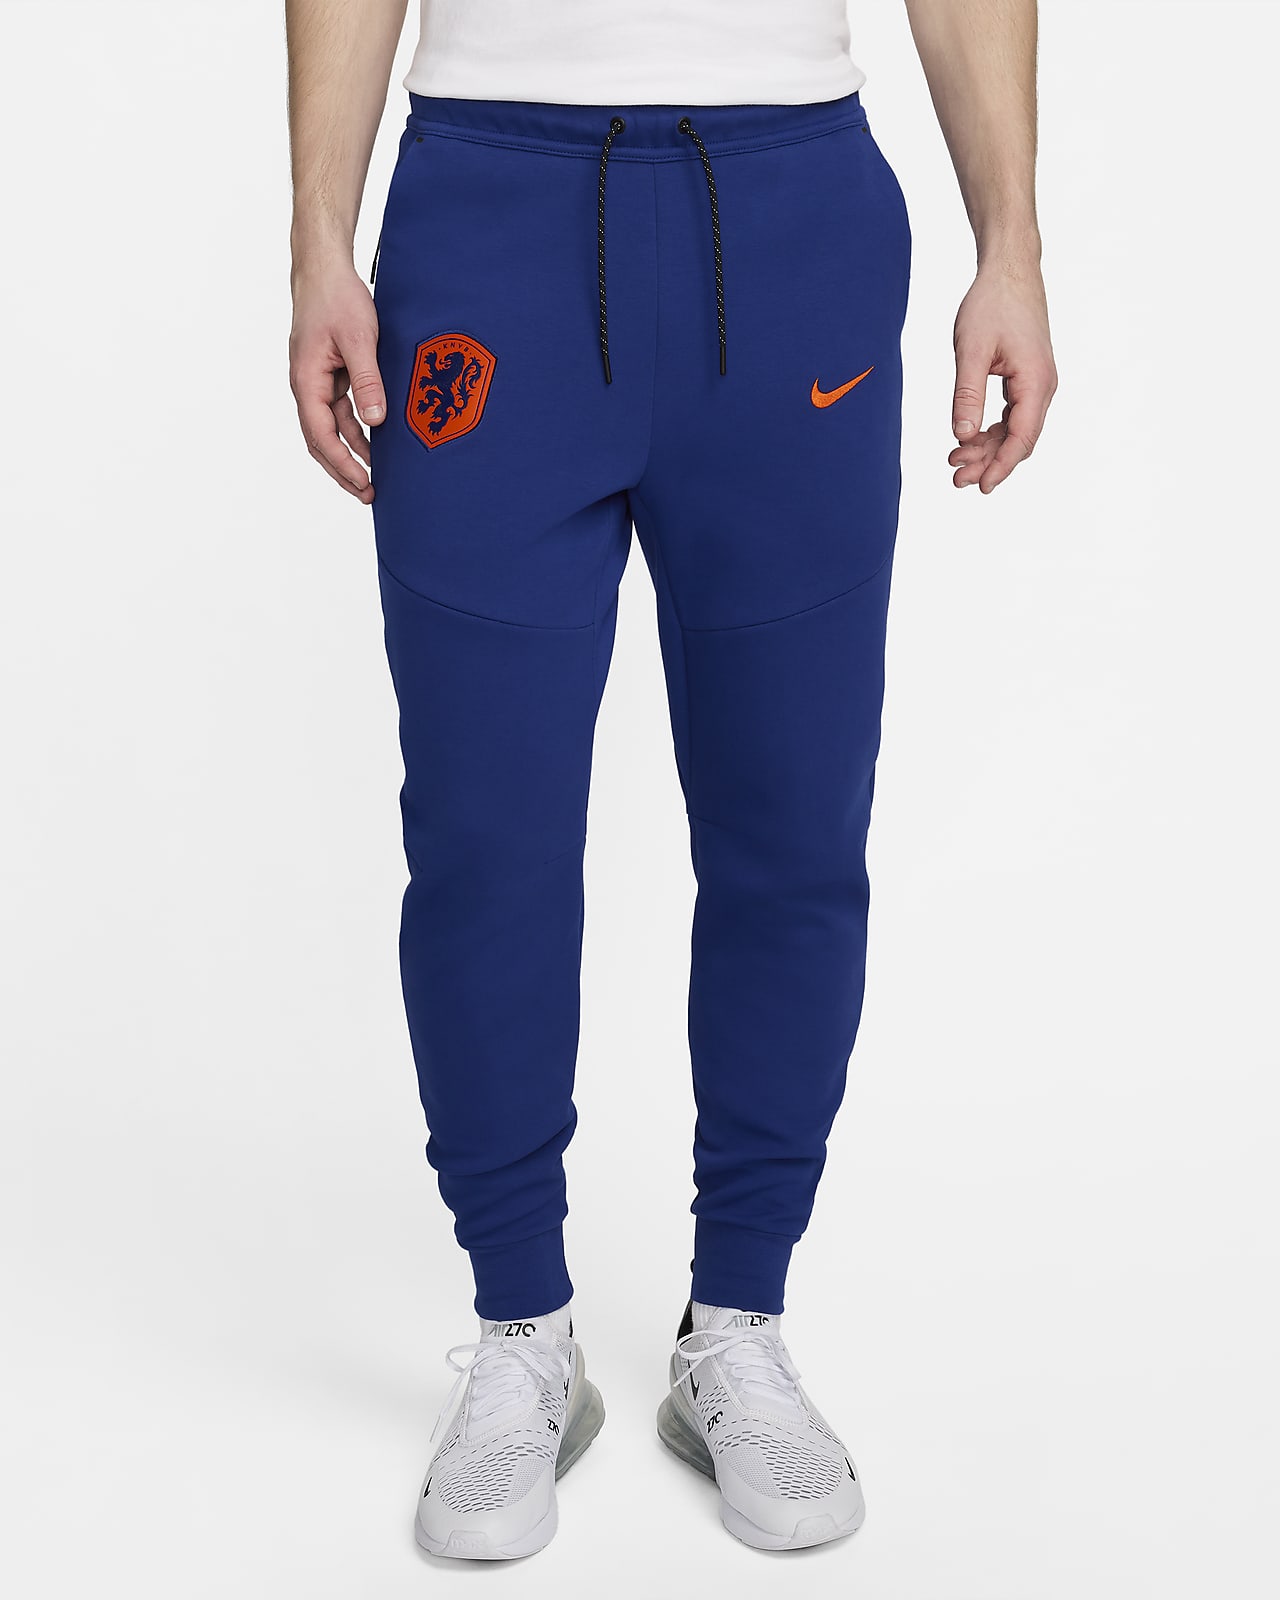 Països Baixos Tech Fleece Pantalons jogger de futbol Nike - Home